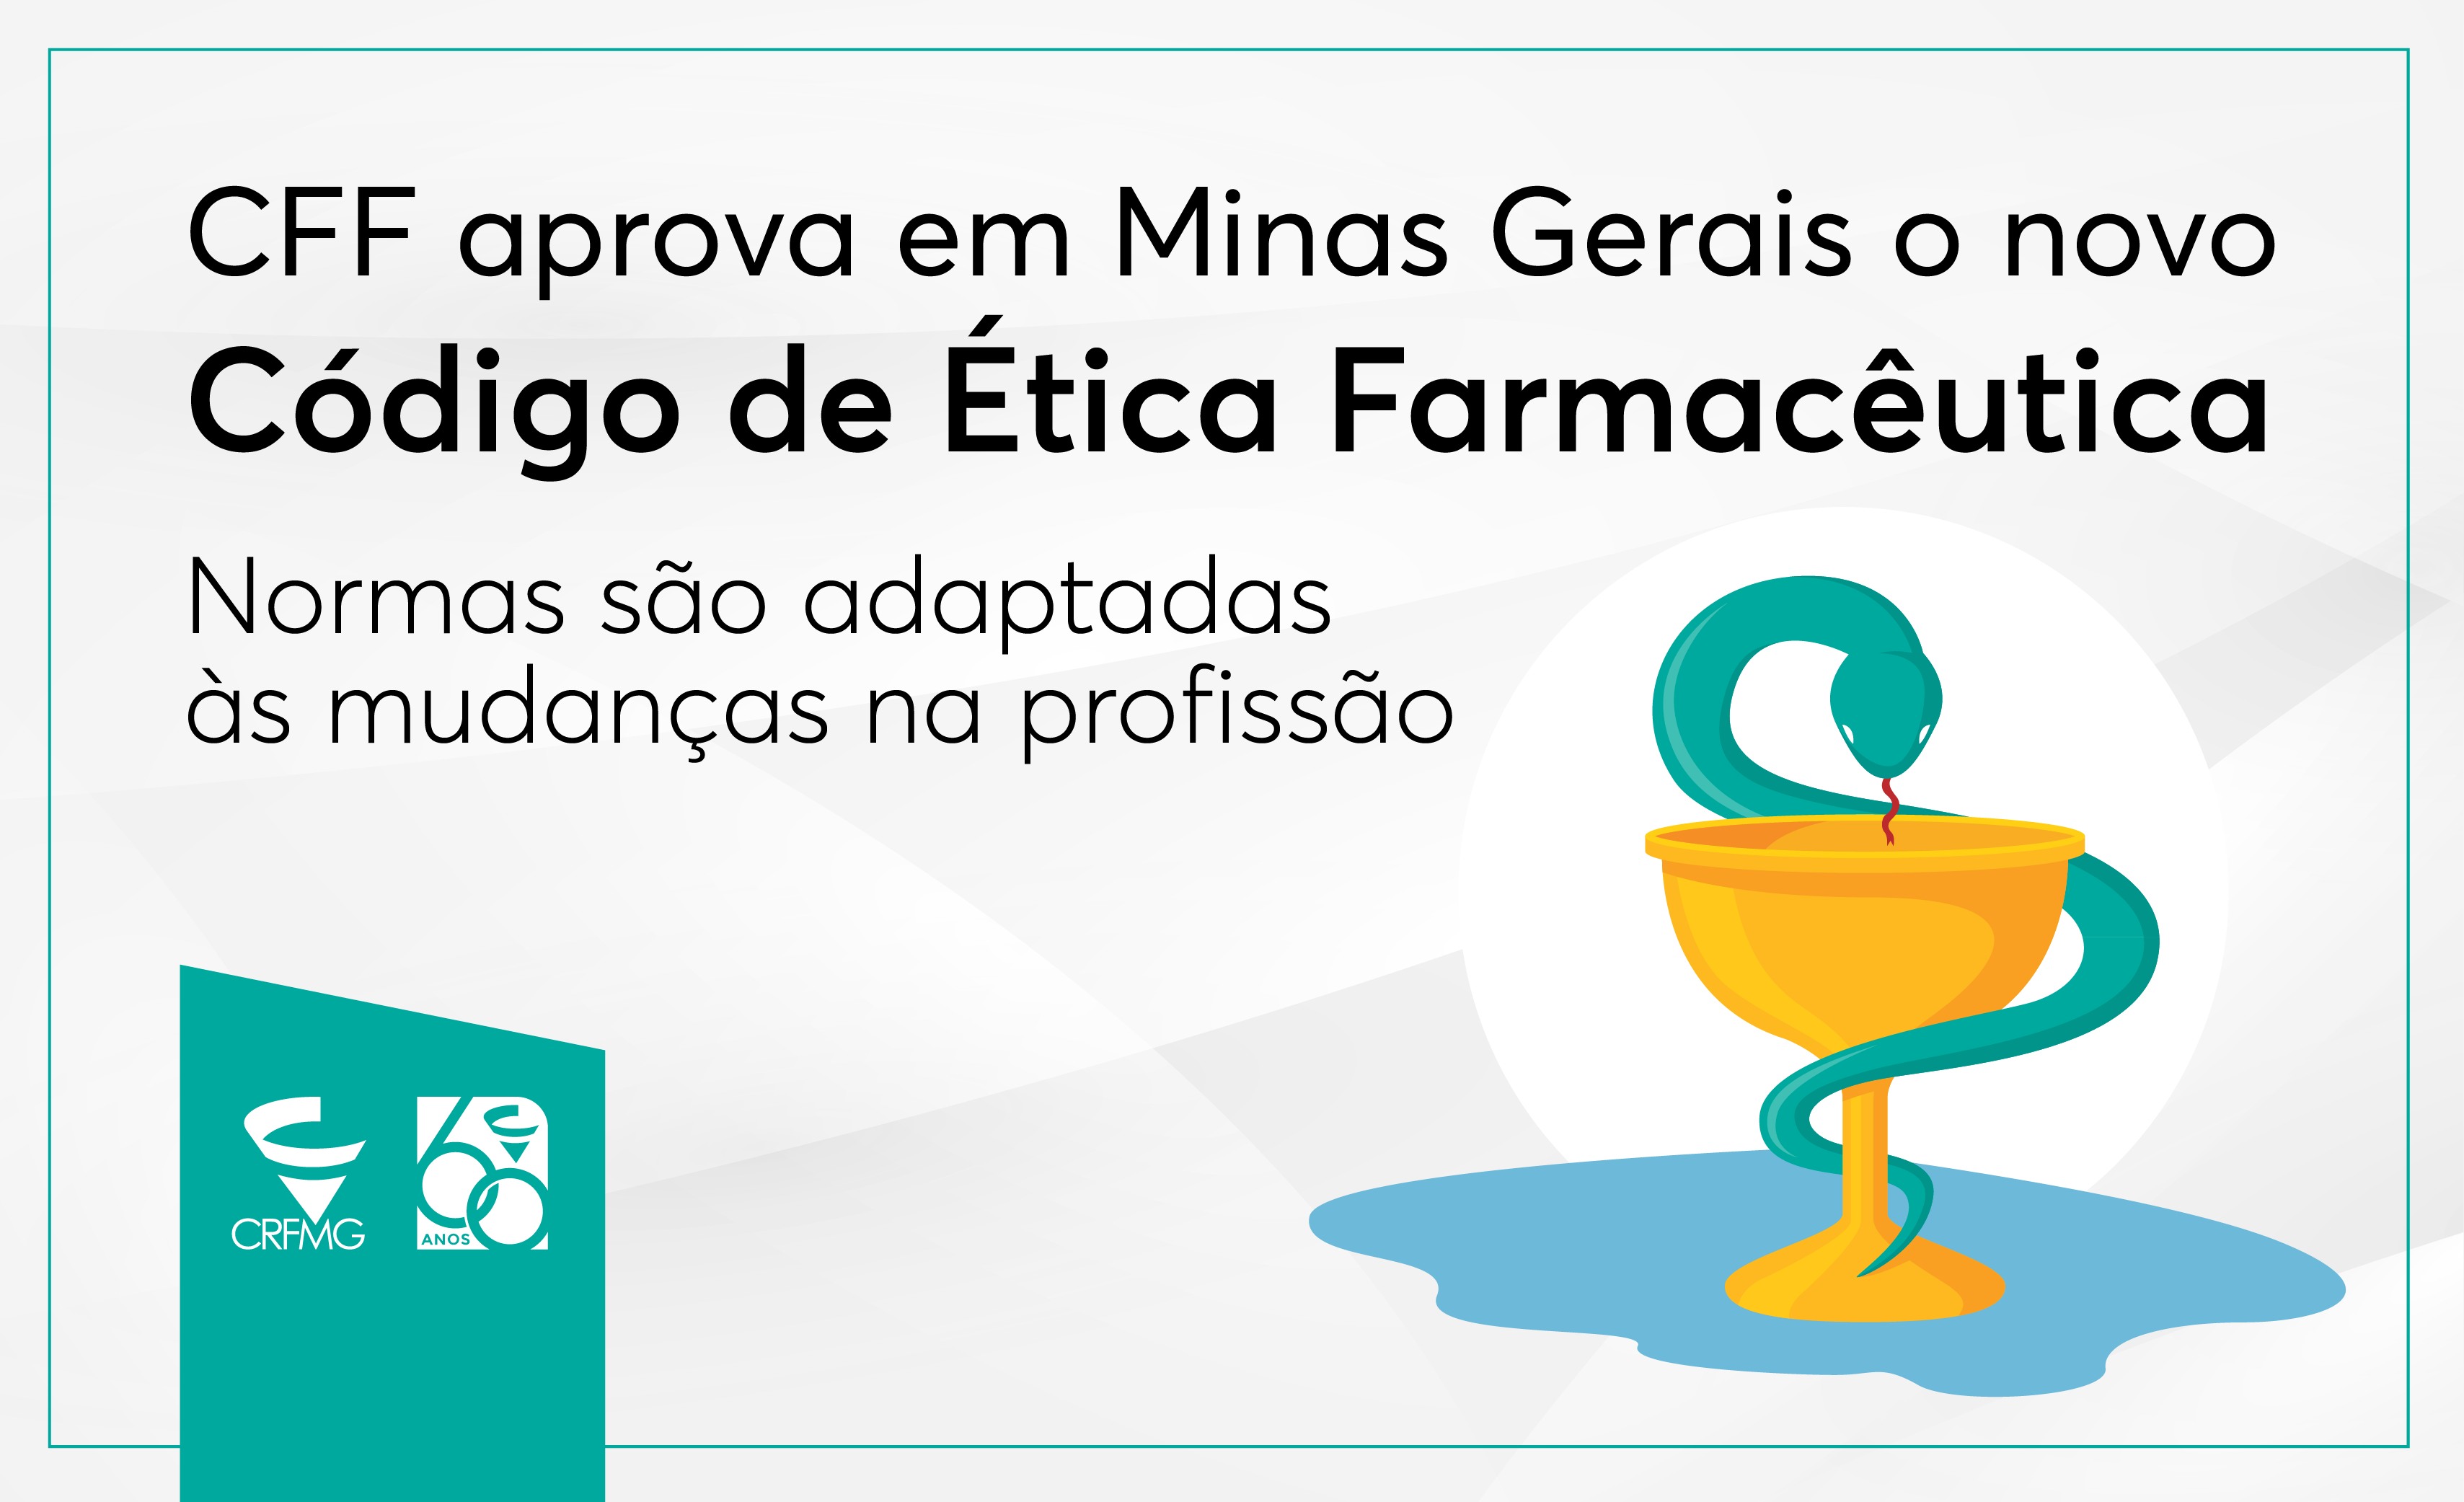 Plenário do CFF aprova em Minas Gerais o novo Código de Ética Farmacêutica